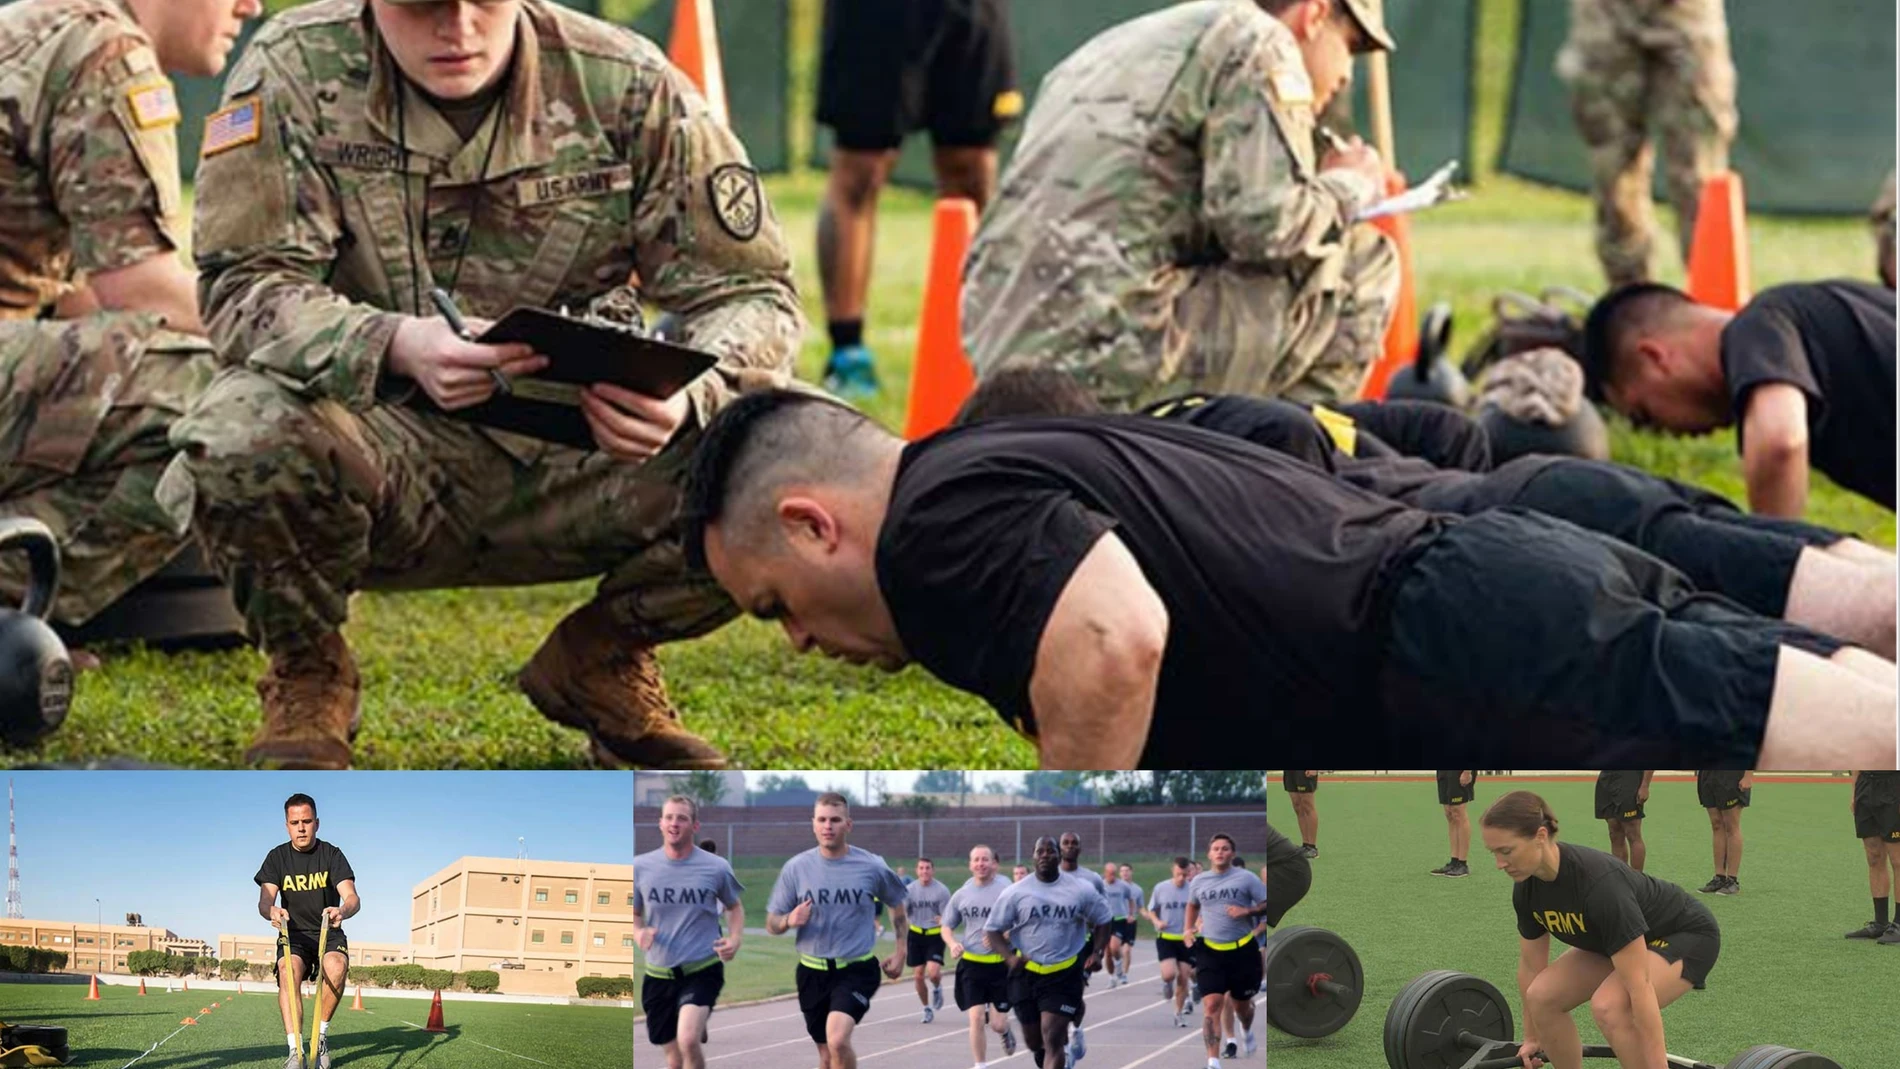 Entrenar como soldado: ¿Superarías el del Ejército americano?